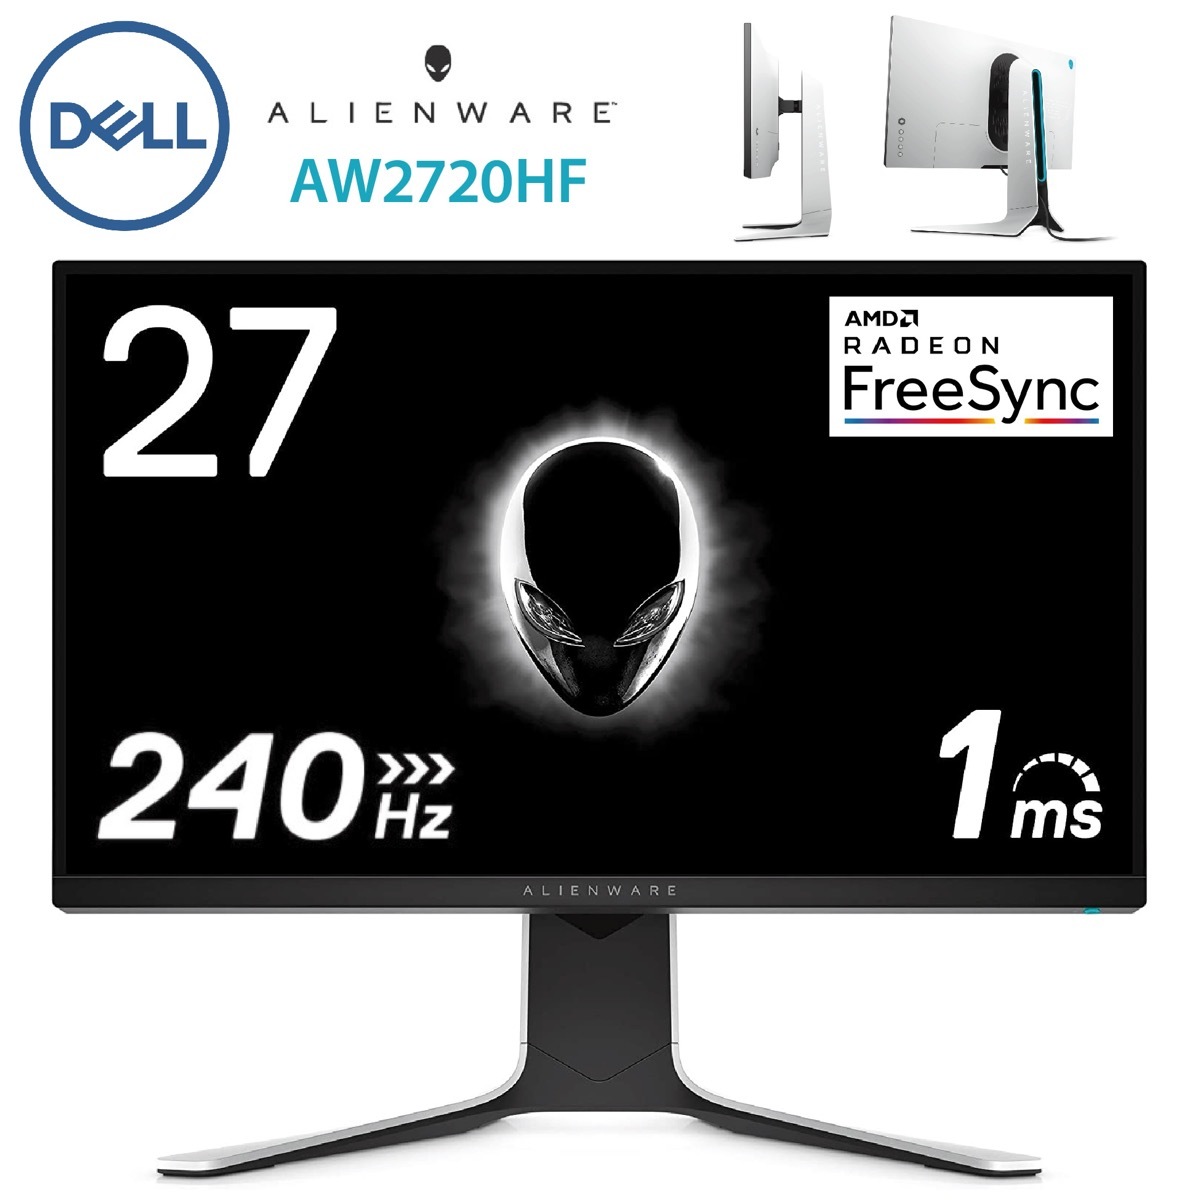 Dell AW2720HF ALIENWARE 27インチ ゲーミングモニター フルHD IPS 非光沢/1ms 240Hz DP HDMI x2  AMD FREESYNC ディスプレイ 液晶 デル エイリアンウェア (16) | APマーケット